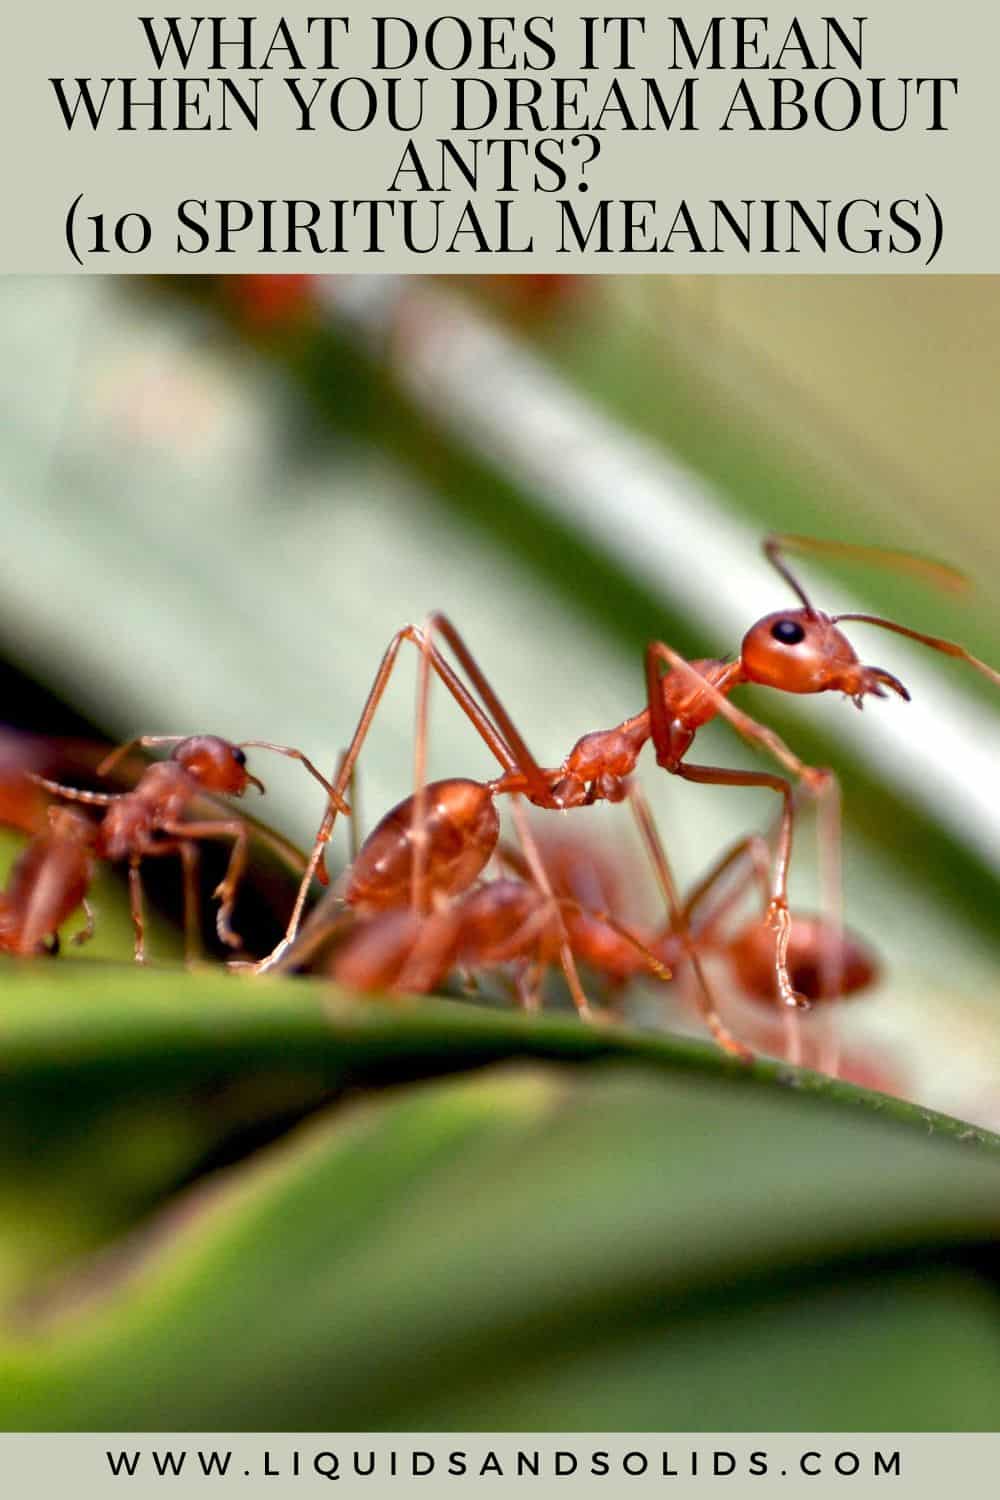  Ce que signifie rêver de fourmis (10 significations spirituelles)